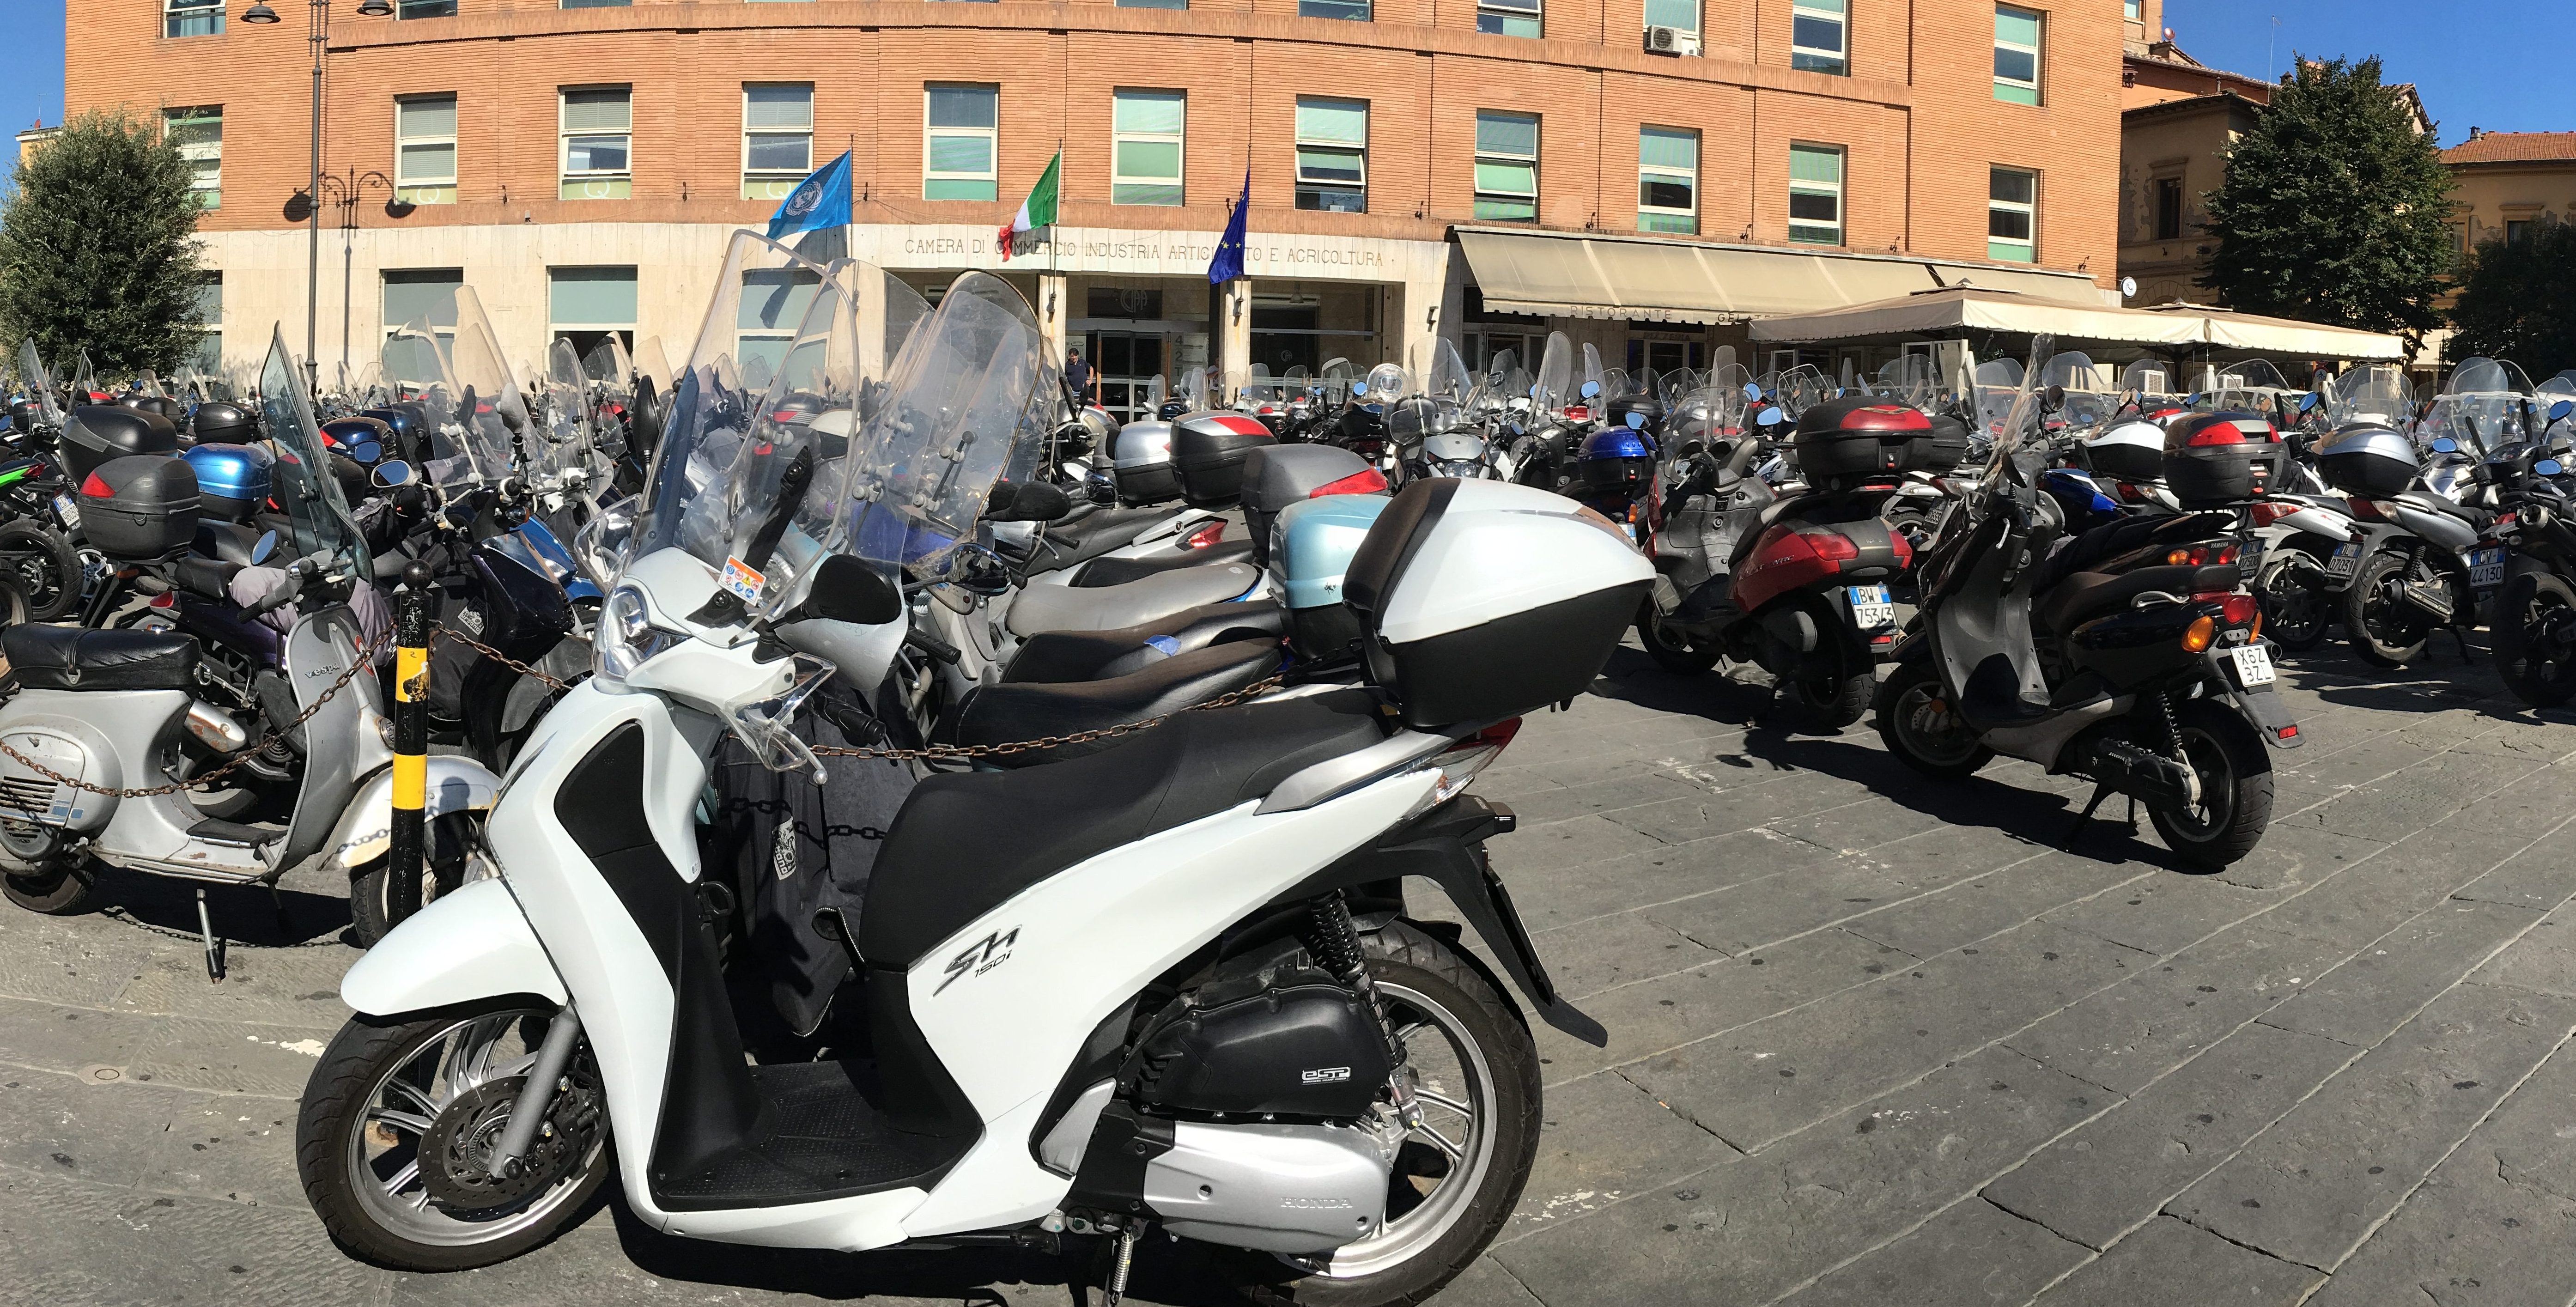 Huge motorcycle parking lot Siena